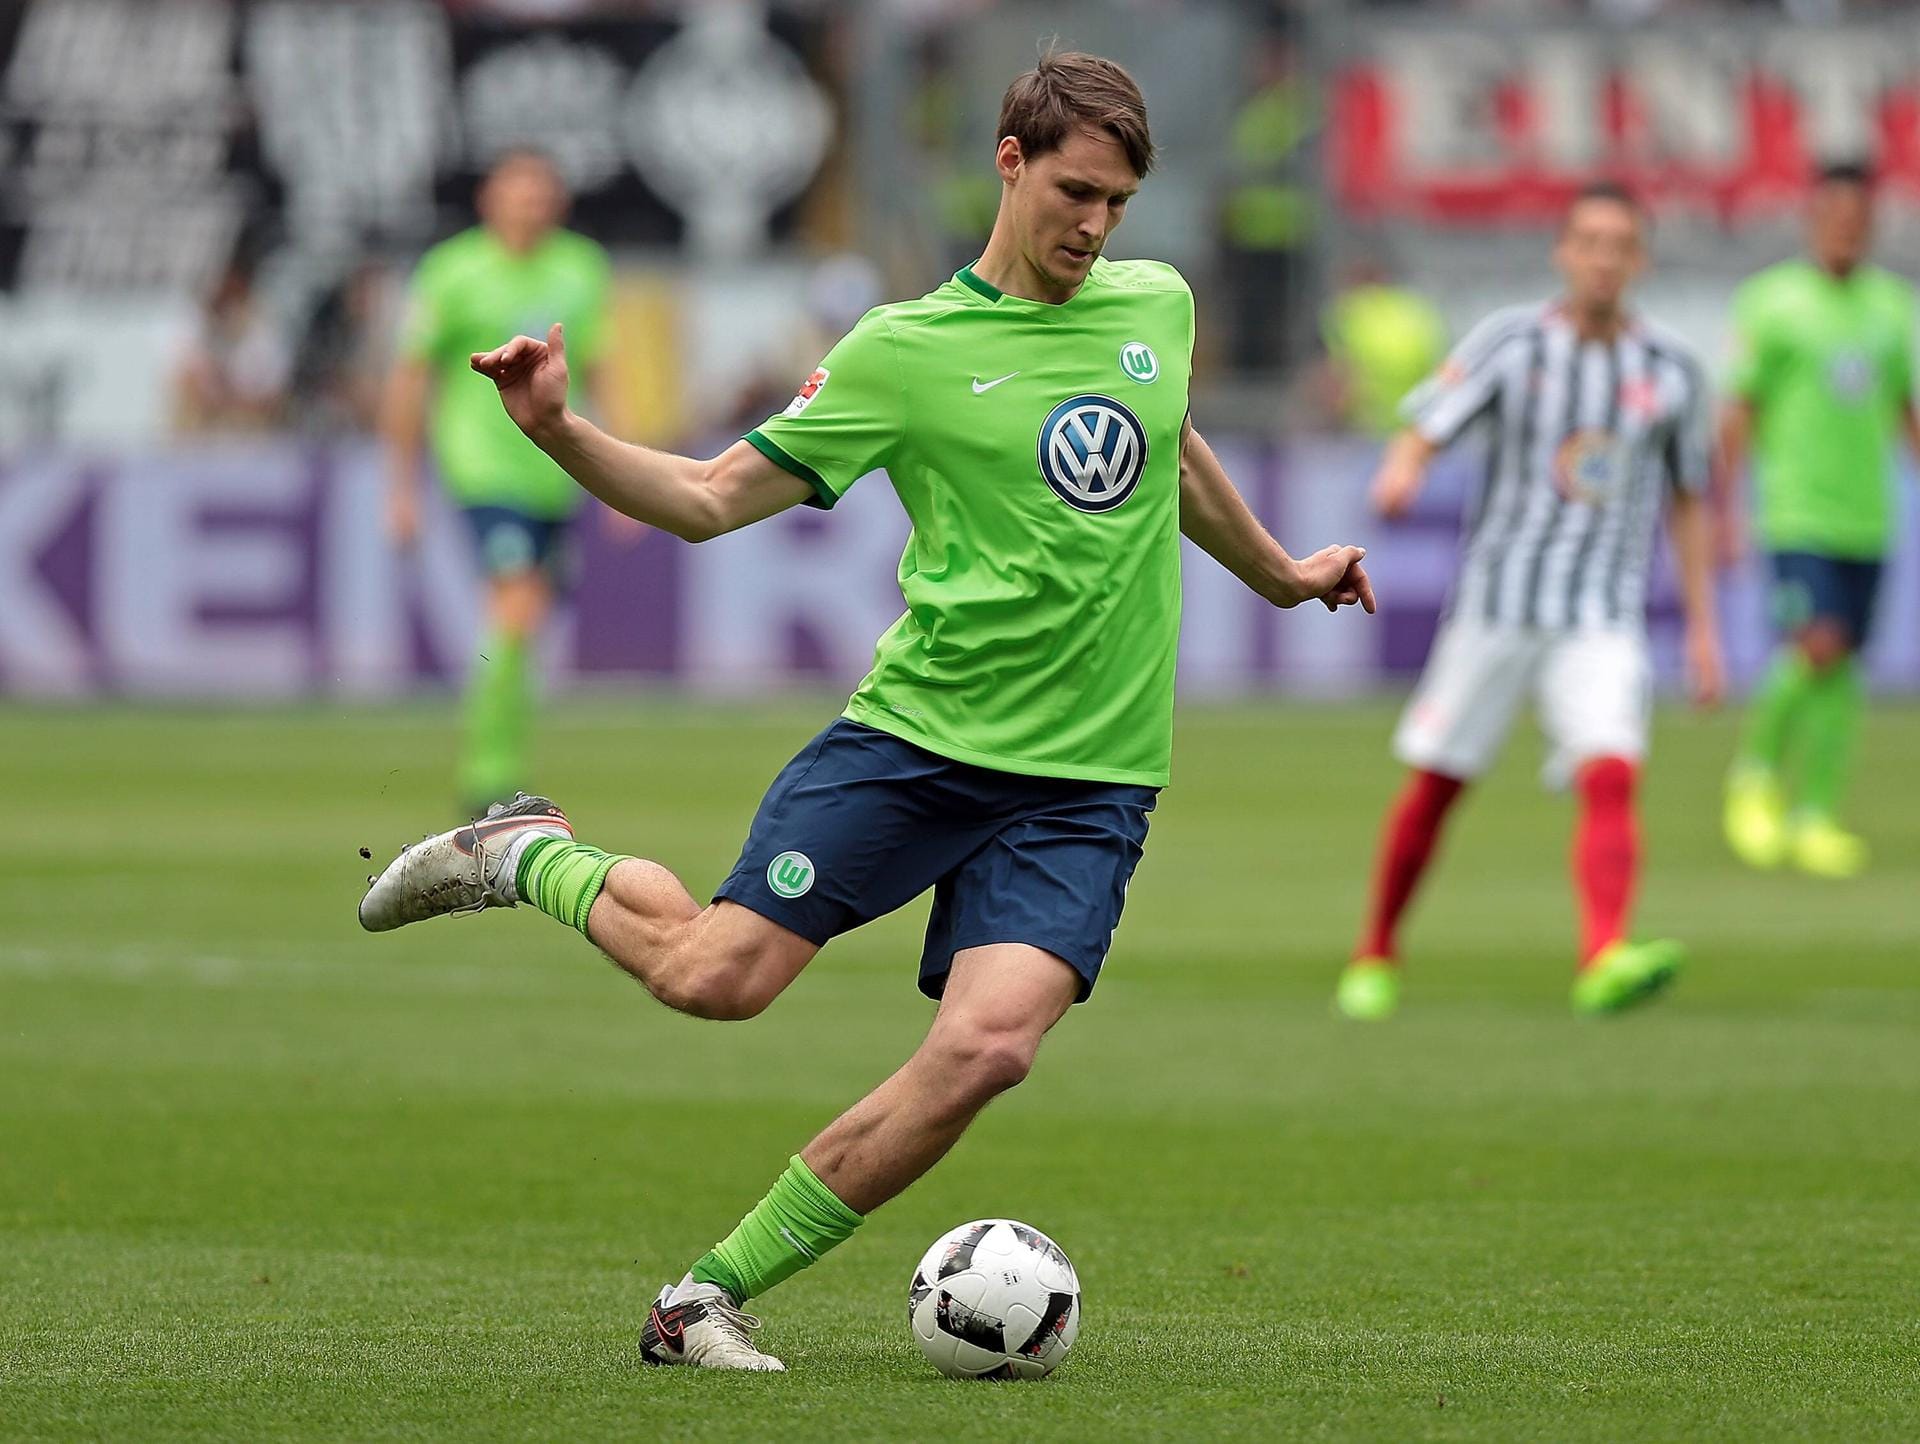 Ex-Nationalspieler Philipp Wollscheid erlebte eine turbulente Saison in Wolfsburg. Er kehrt nach der Saison zu Stoke City zurück. Die "Potters" haben allerdings keine Verwendung mehr für ihn. Ex-Wölfe-Coach Valerien Ismaël hatte ihn zwischenzeitlich sogar suspendiert.